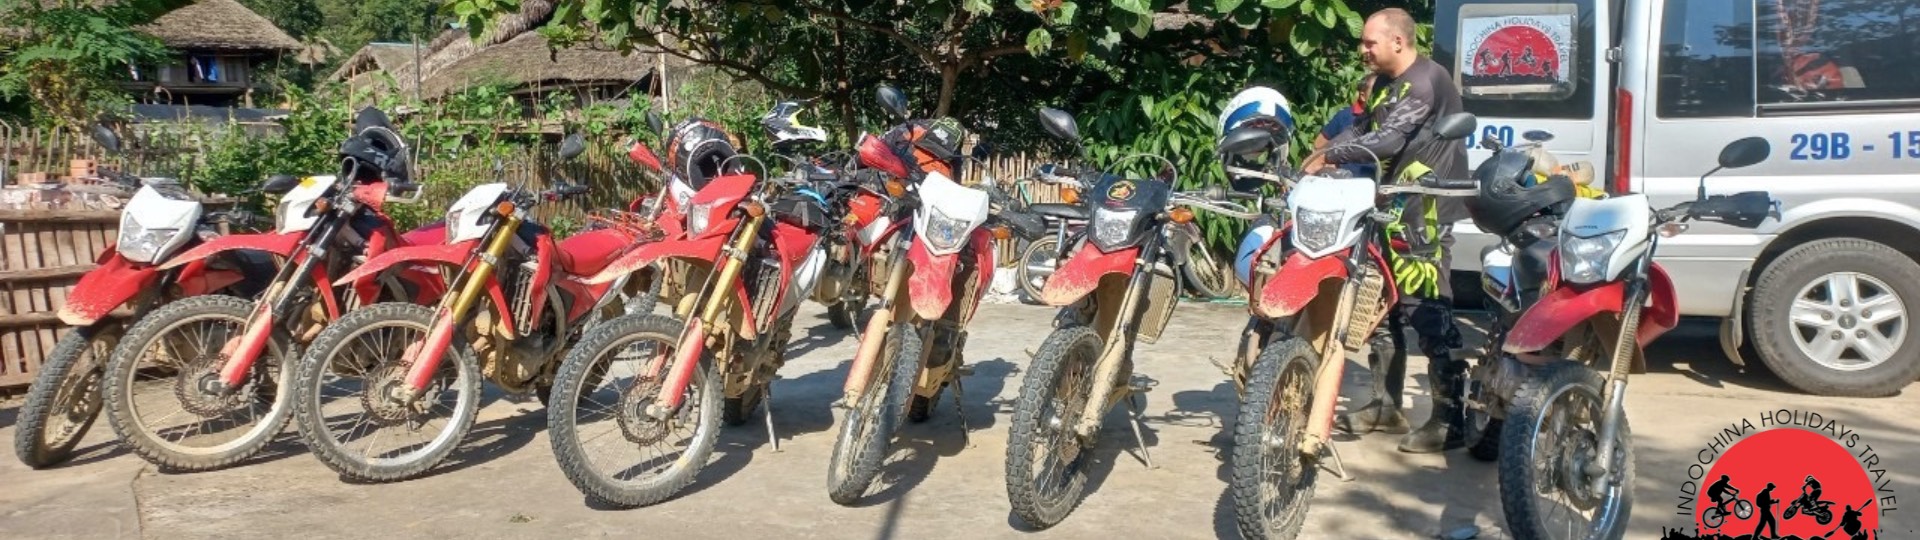 4 Days Northern Vietnam Motorbike Tour